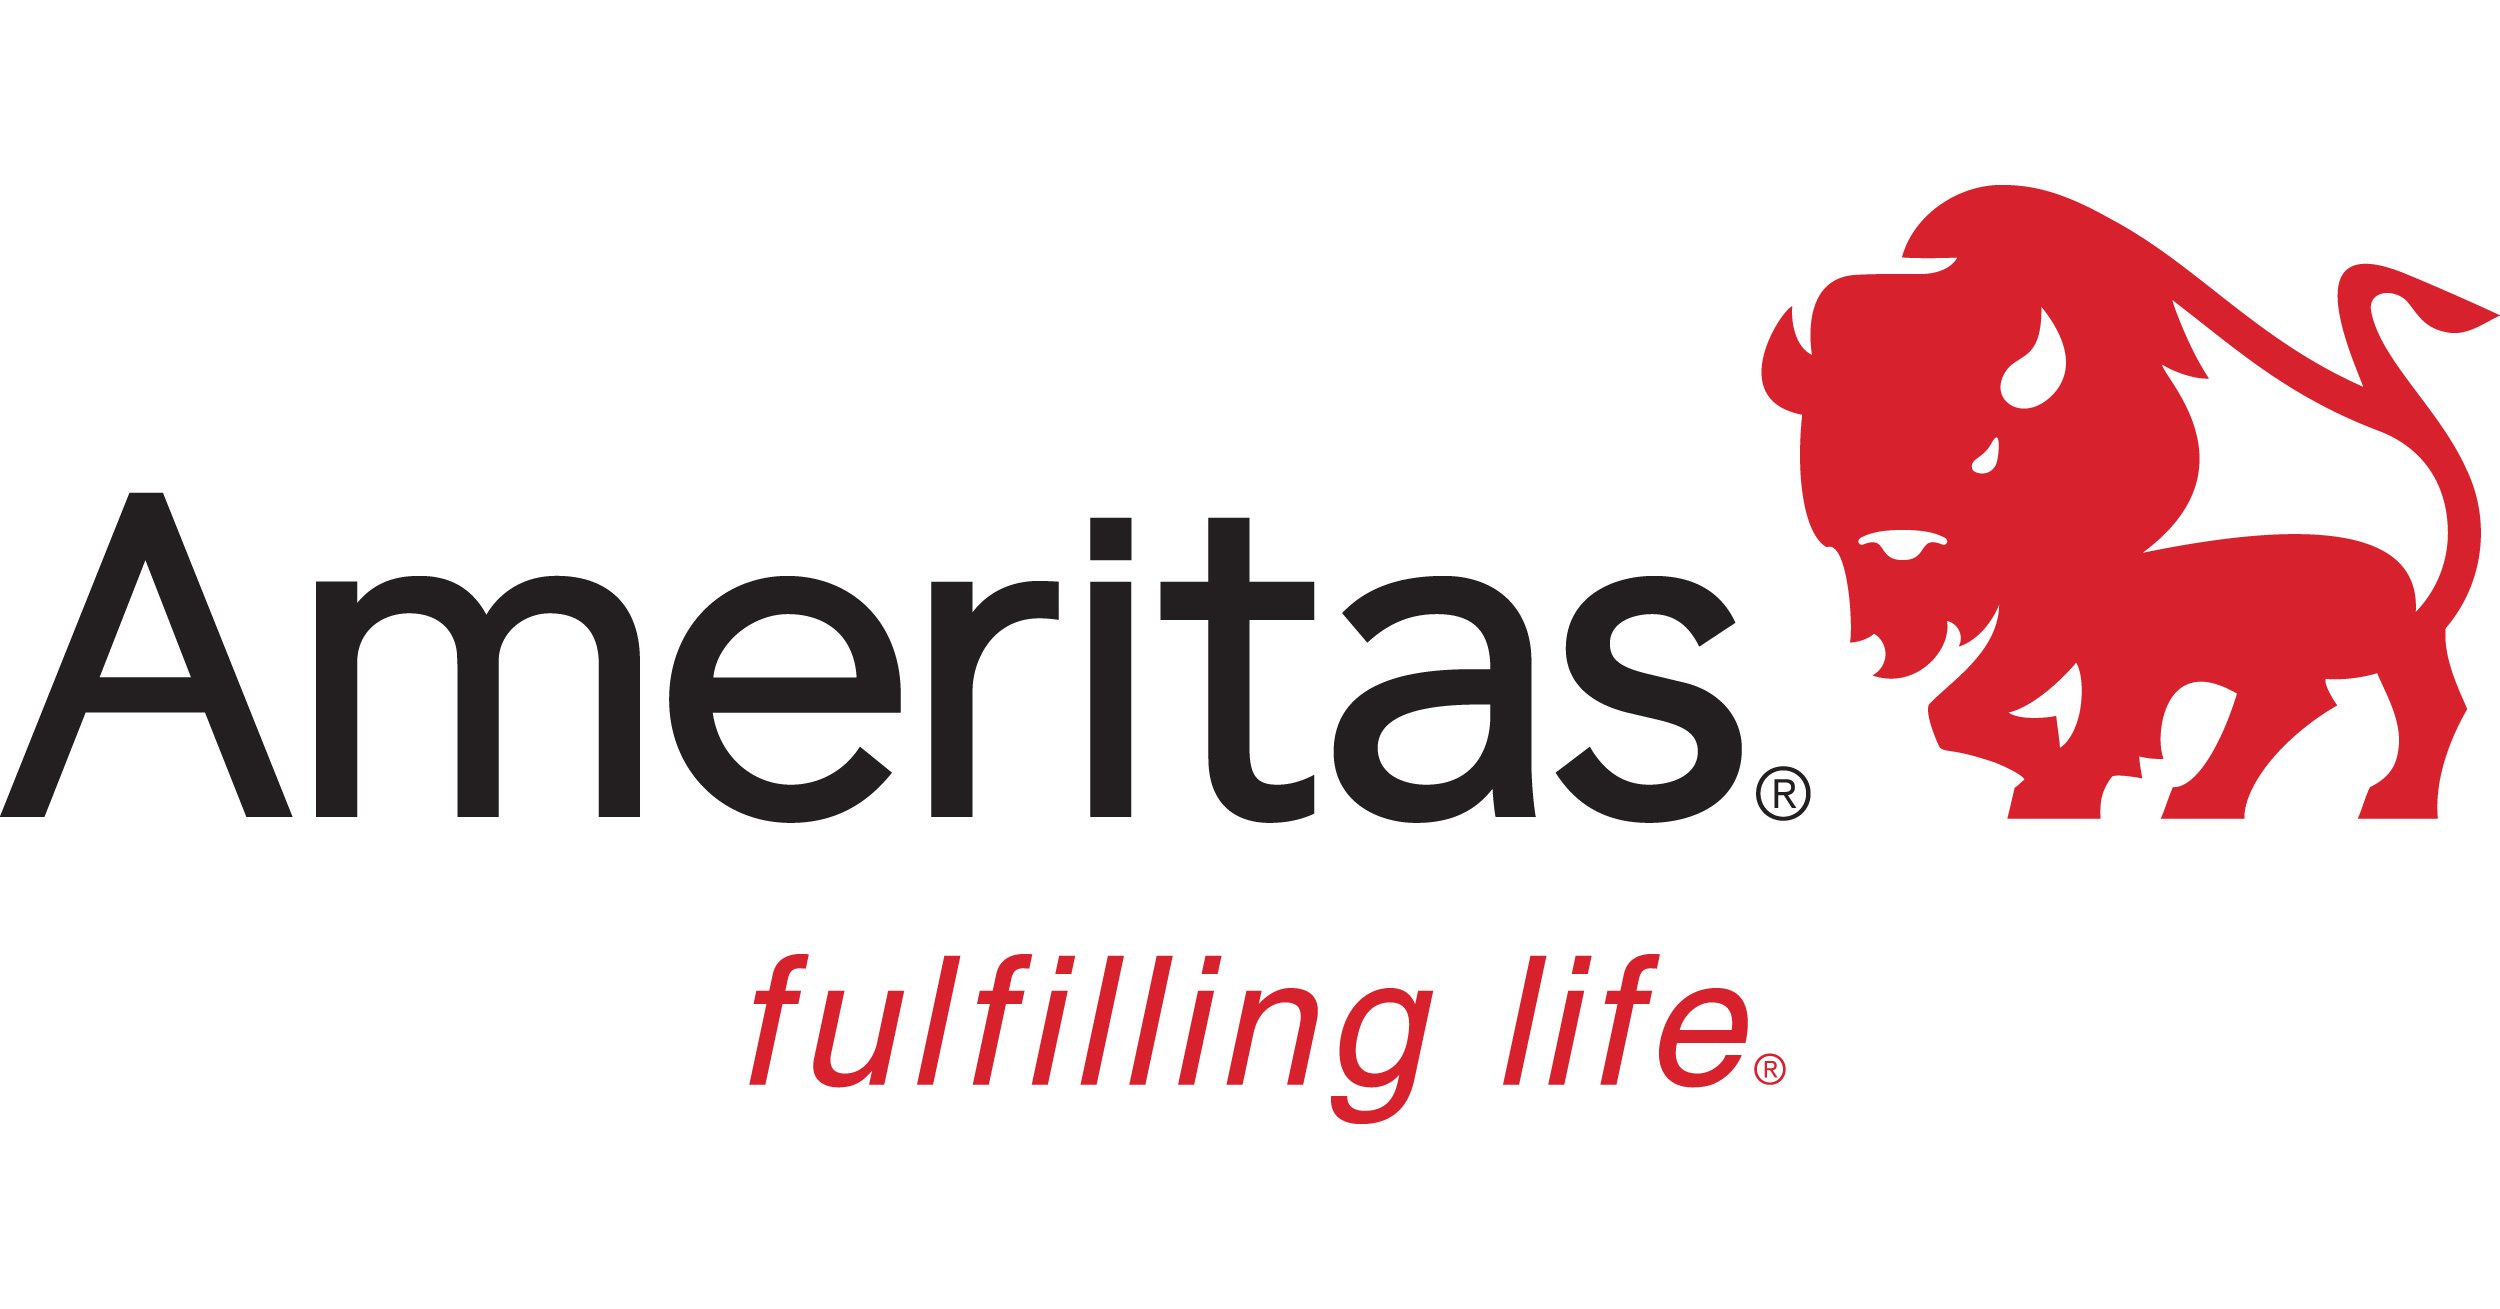 Ameritas appoints Udell, Wieseler to key leadership positions